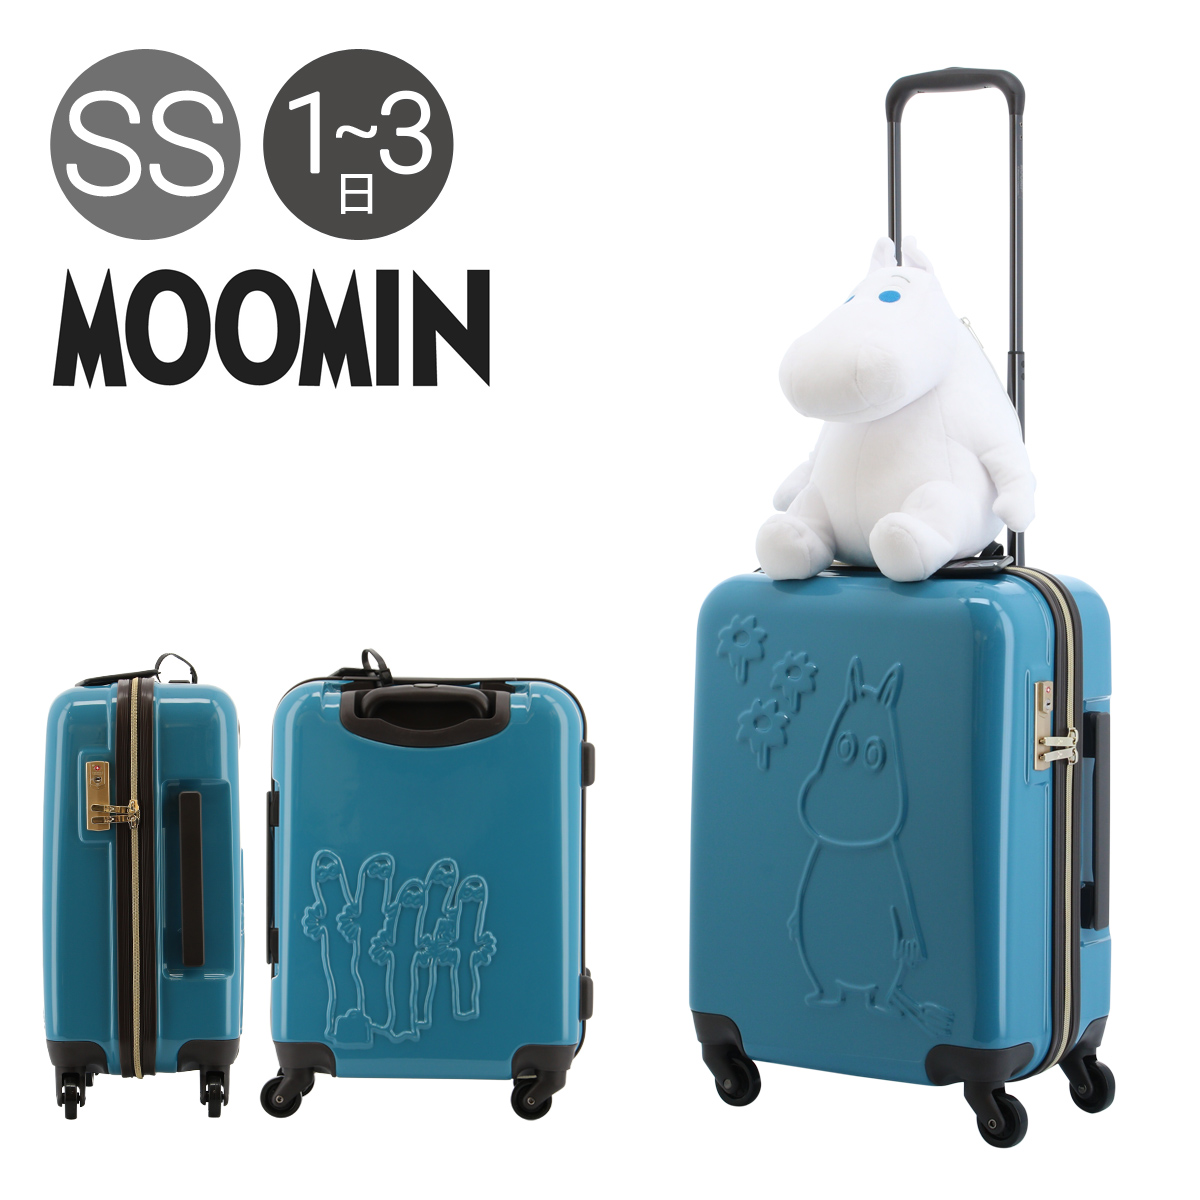 ムーミン スーツケース 機内持ち込み可 レディース MM2-025 MOOMIN ハード ファスナー キャリーケース TSAロック搭載 ぬいぐるみ  ネックピロー付き 1年保証